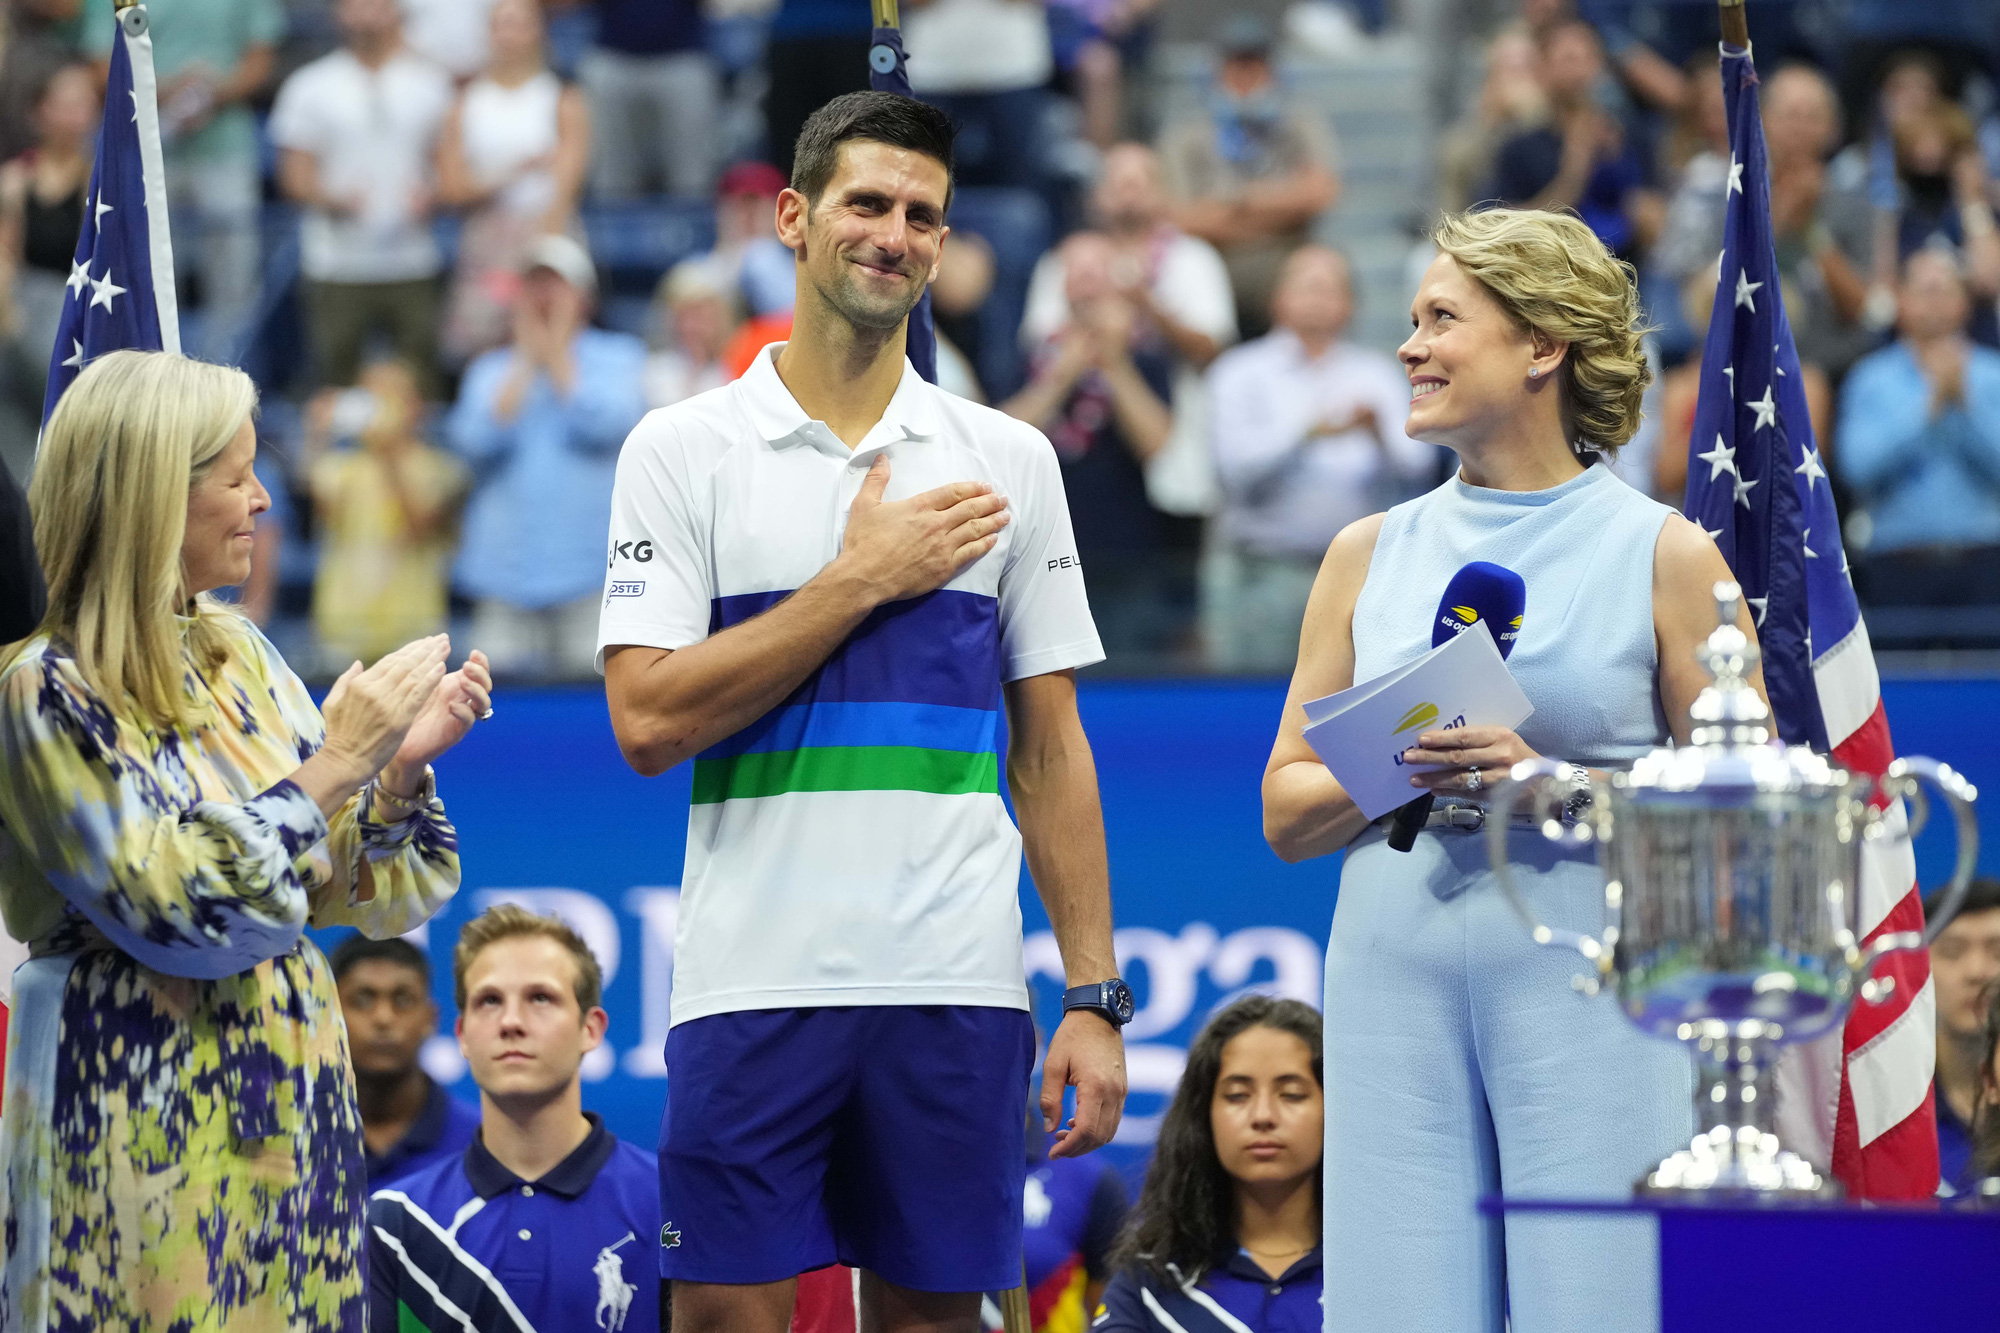 Đánh bại Djokovic, Medvedev vô địch US Open 2021 - Ảnh 8.